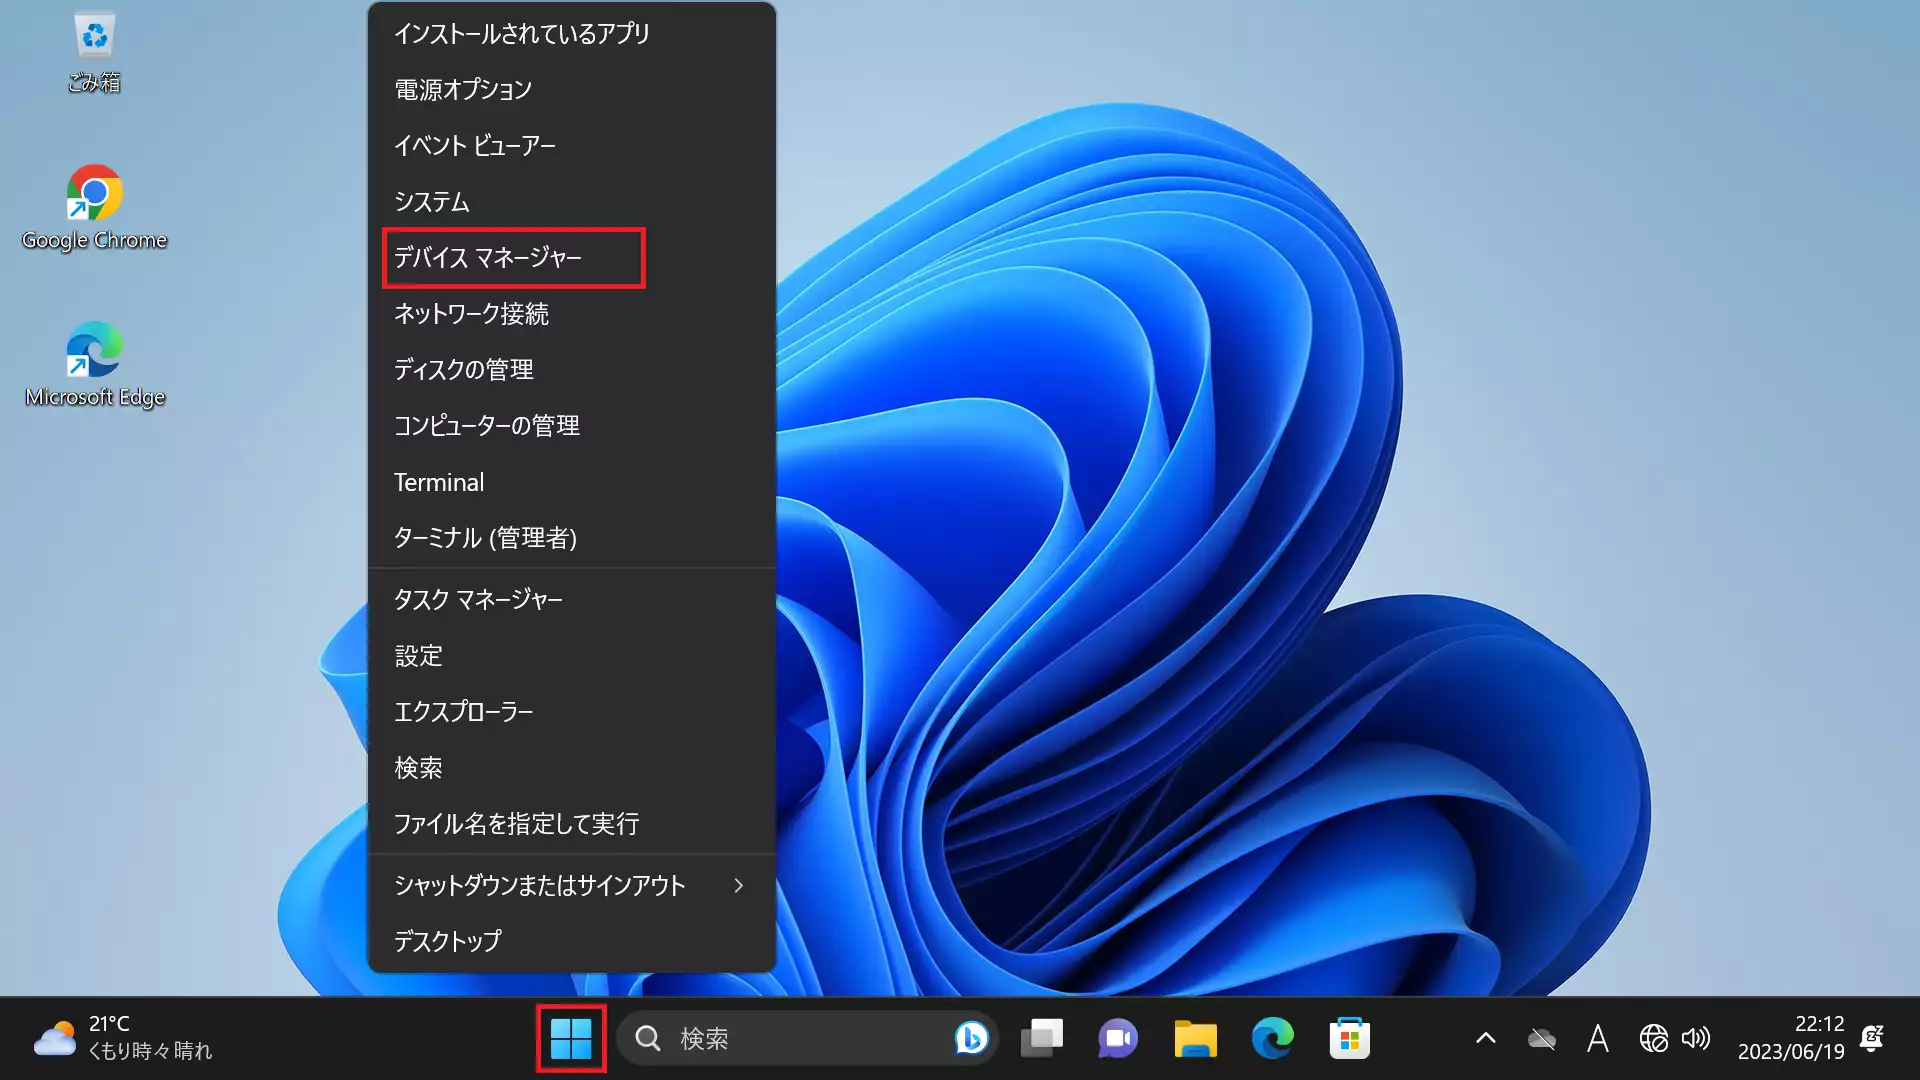 画面左下にある「Windowsアイコン」を右クリックし、表示されるメニューから「デバイスマネージャー」を選択します。